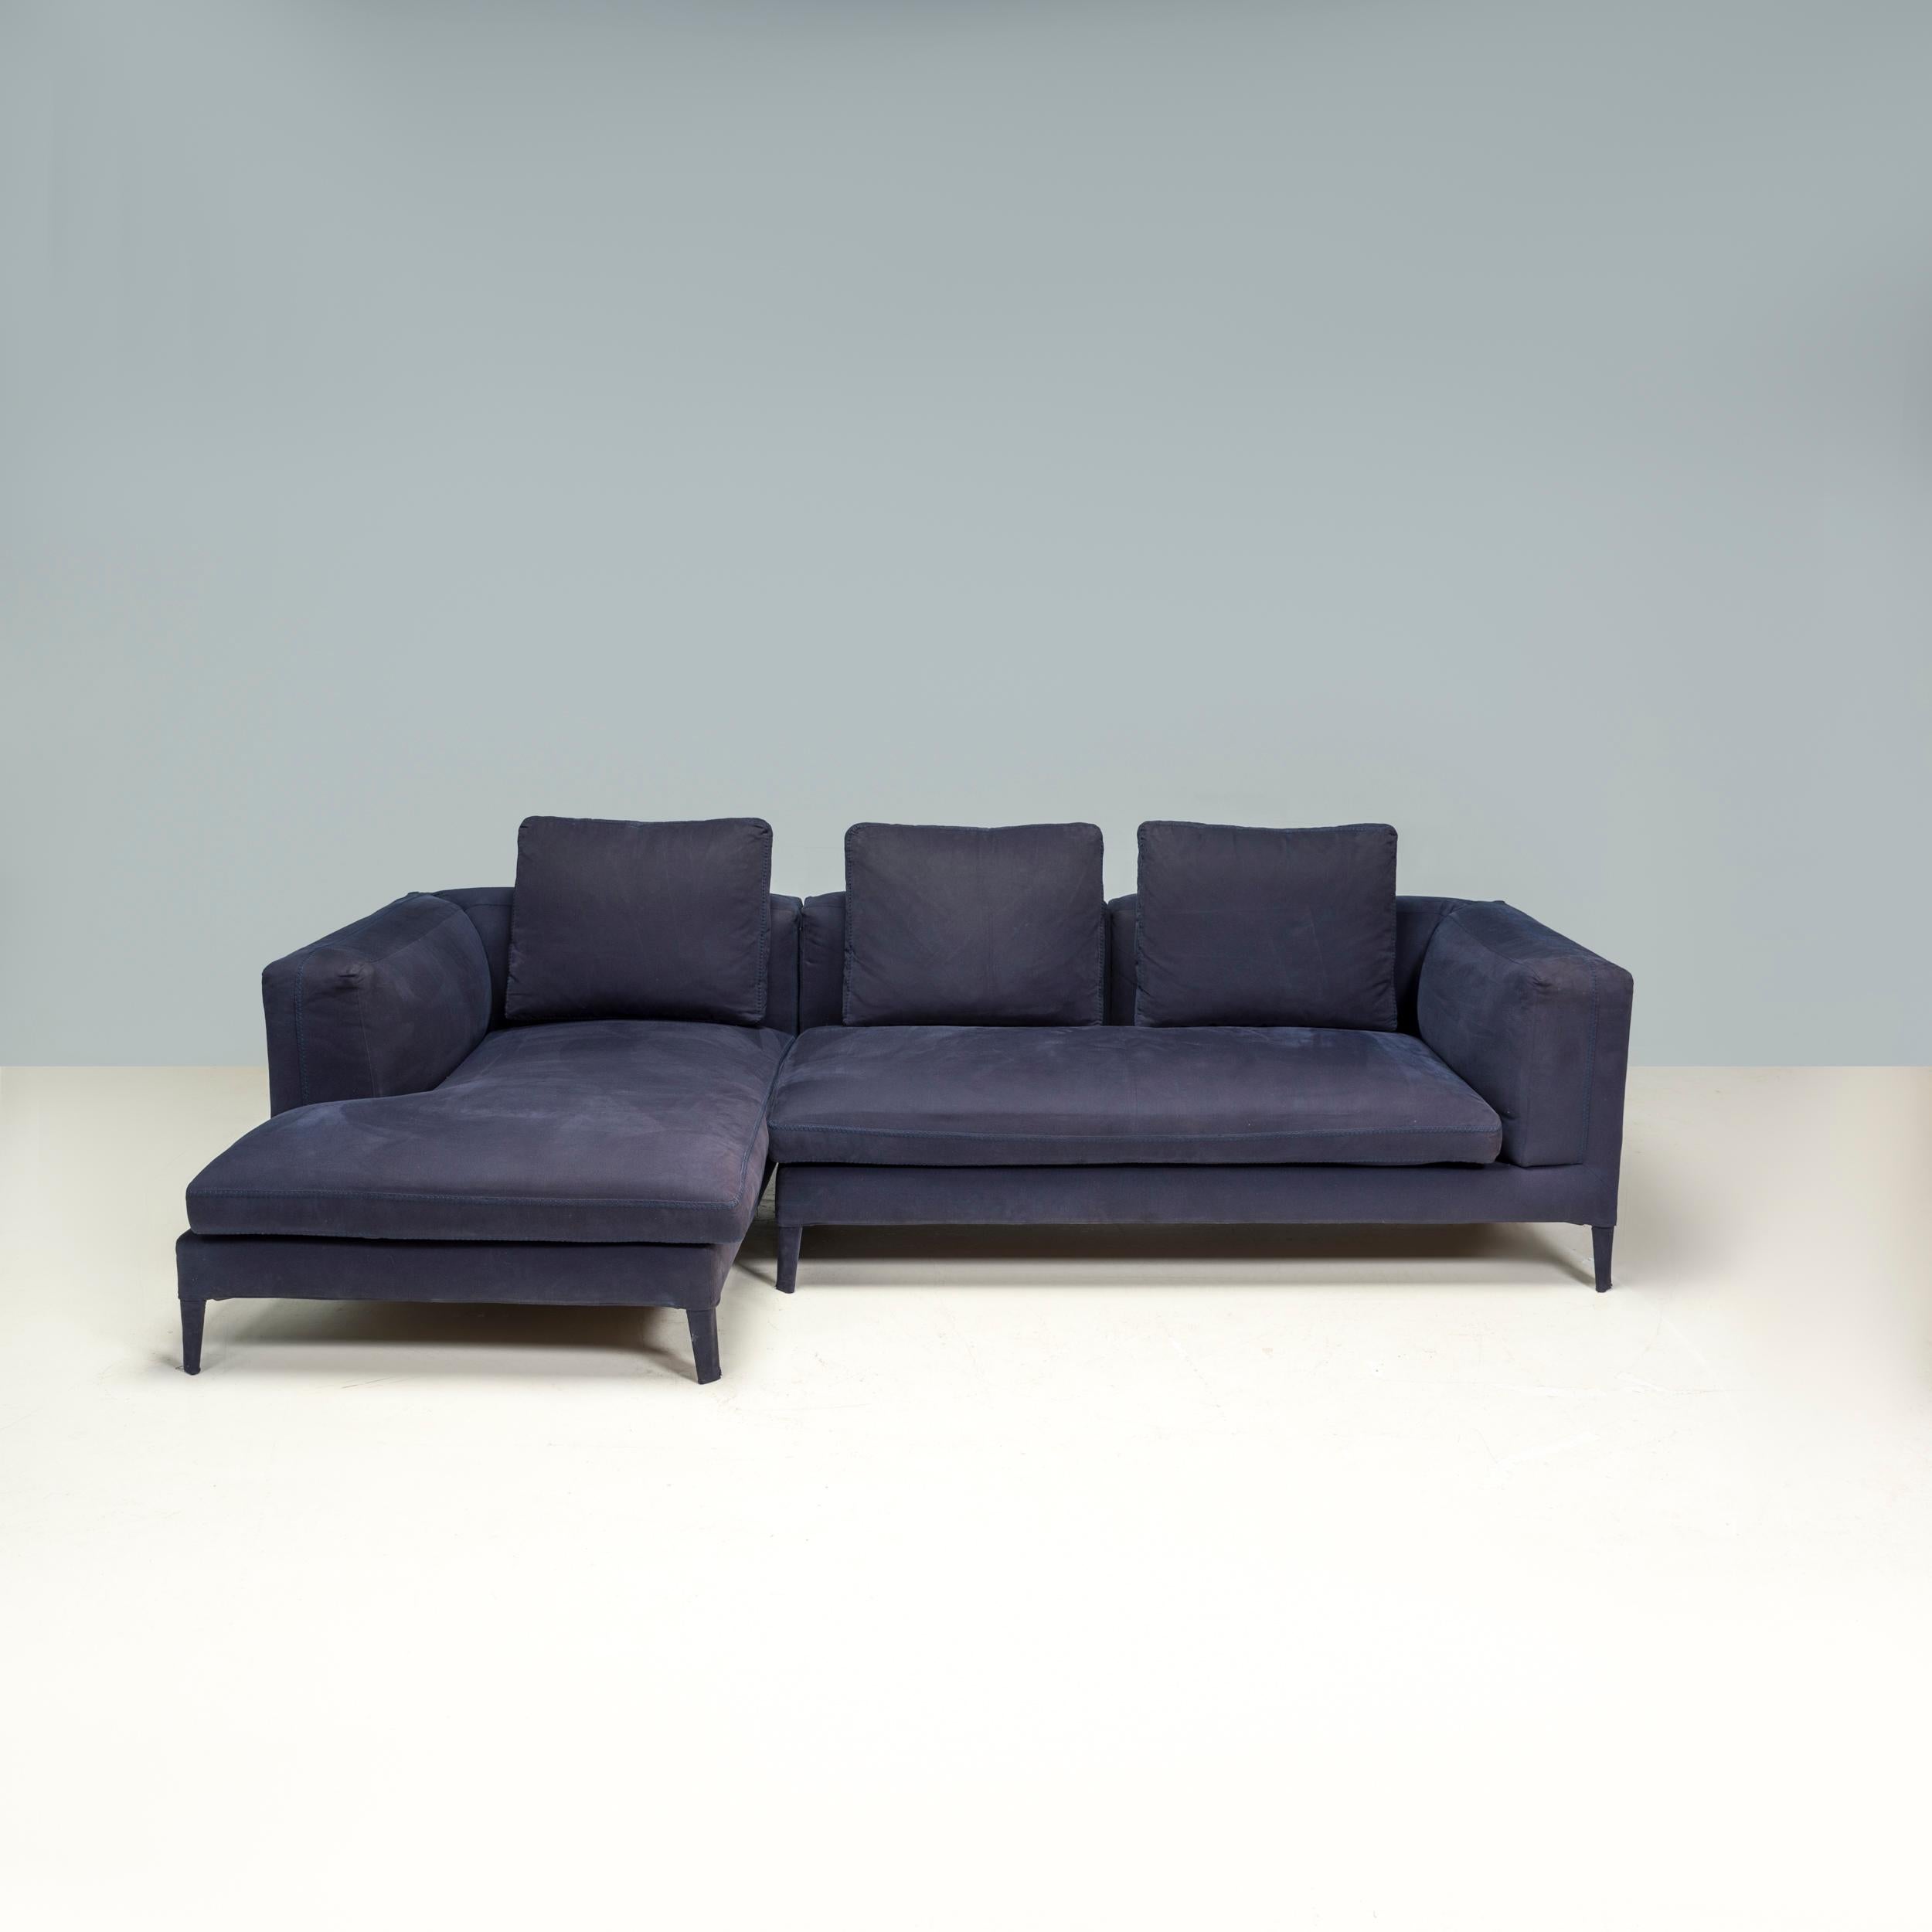 Das Sofa Michel wurde ursprünglich von Antonio Citterio 2012 für B&B Italia entworfen und ist ein fantastisches Beispiel für modernes Möbeldesign.

Das aus einem Stahlrohrrahmen gefertigte Sofa besteht aus zwei Modulen im klassischen Smoking-Stil